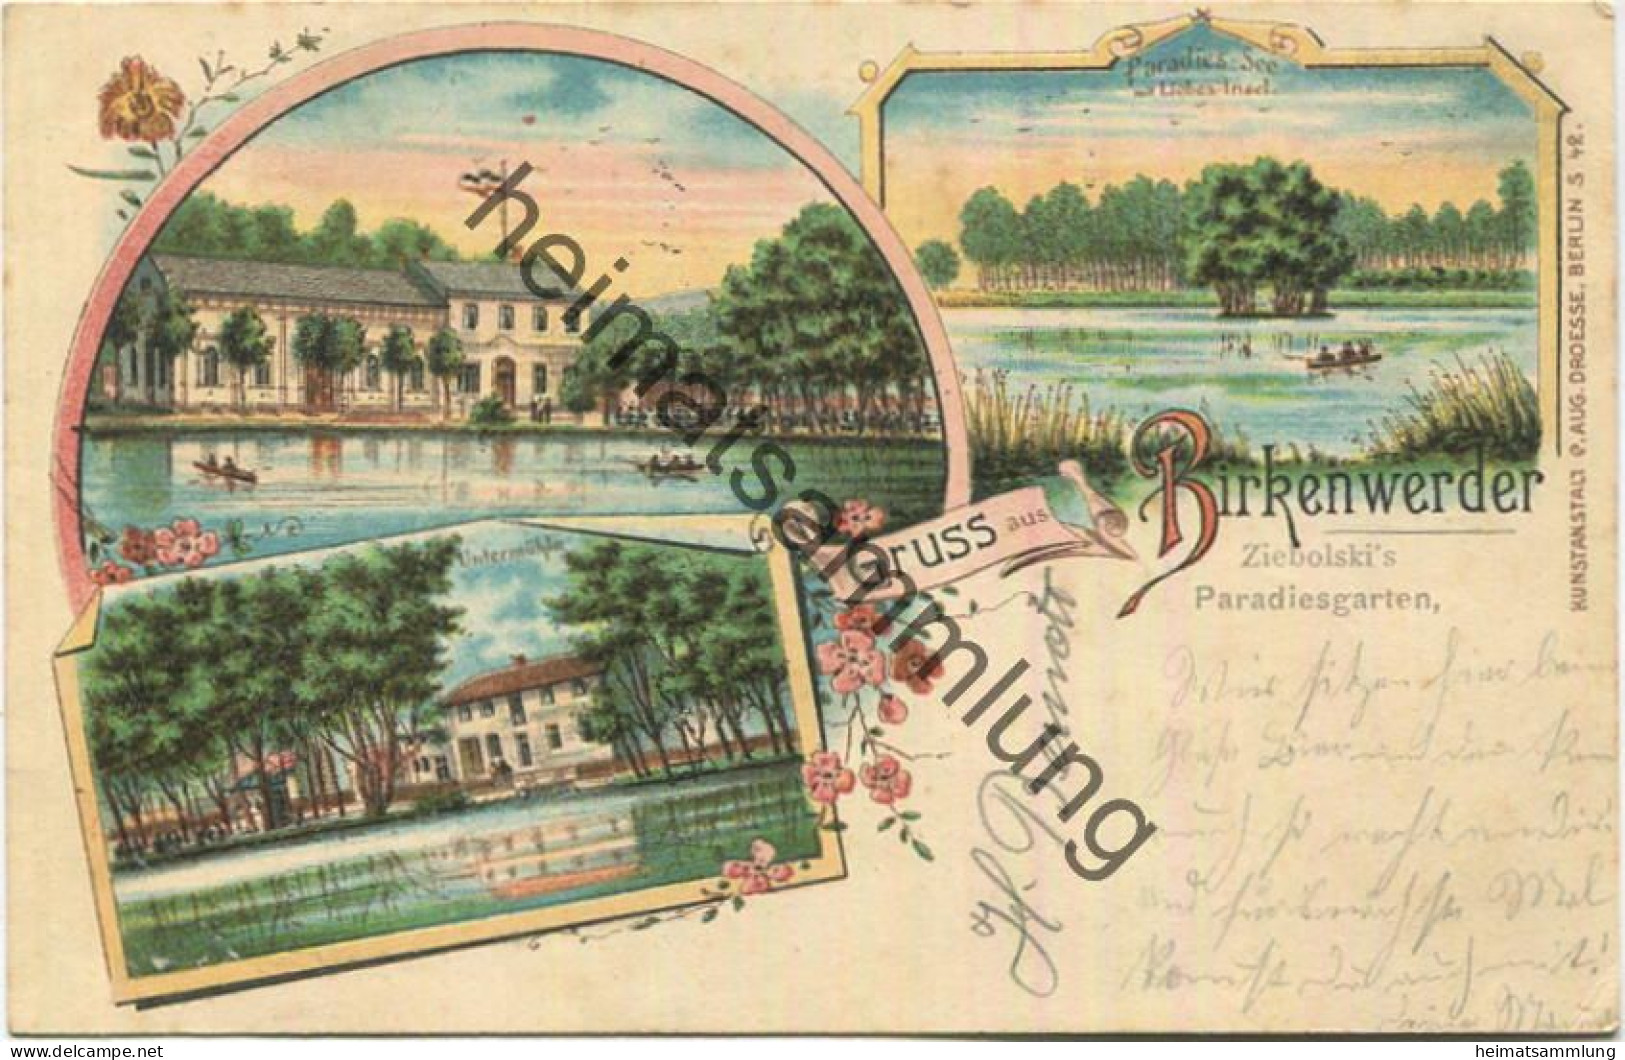 Birkenwerder - Untermühle - Zibolski's Paradiesgarten - Verlag C. Aug. Droesse Berlin Gel. 1901 - Birkenwerder